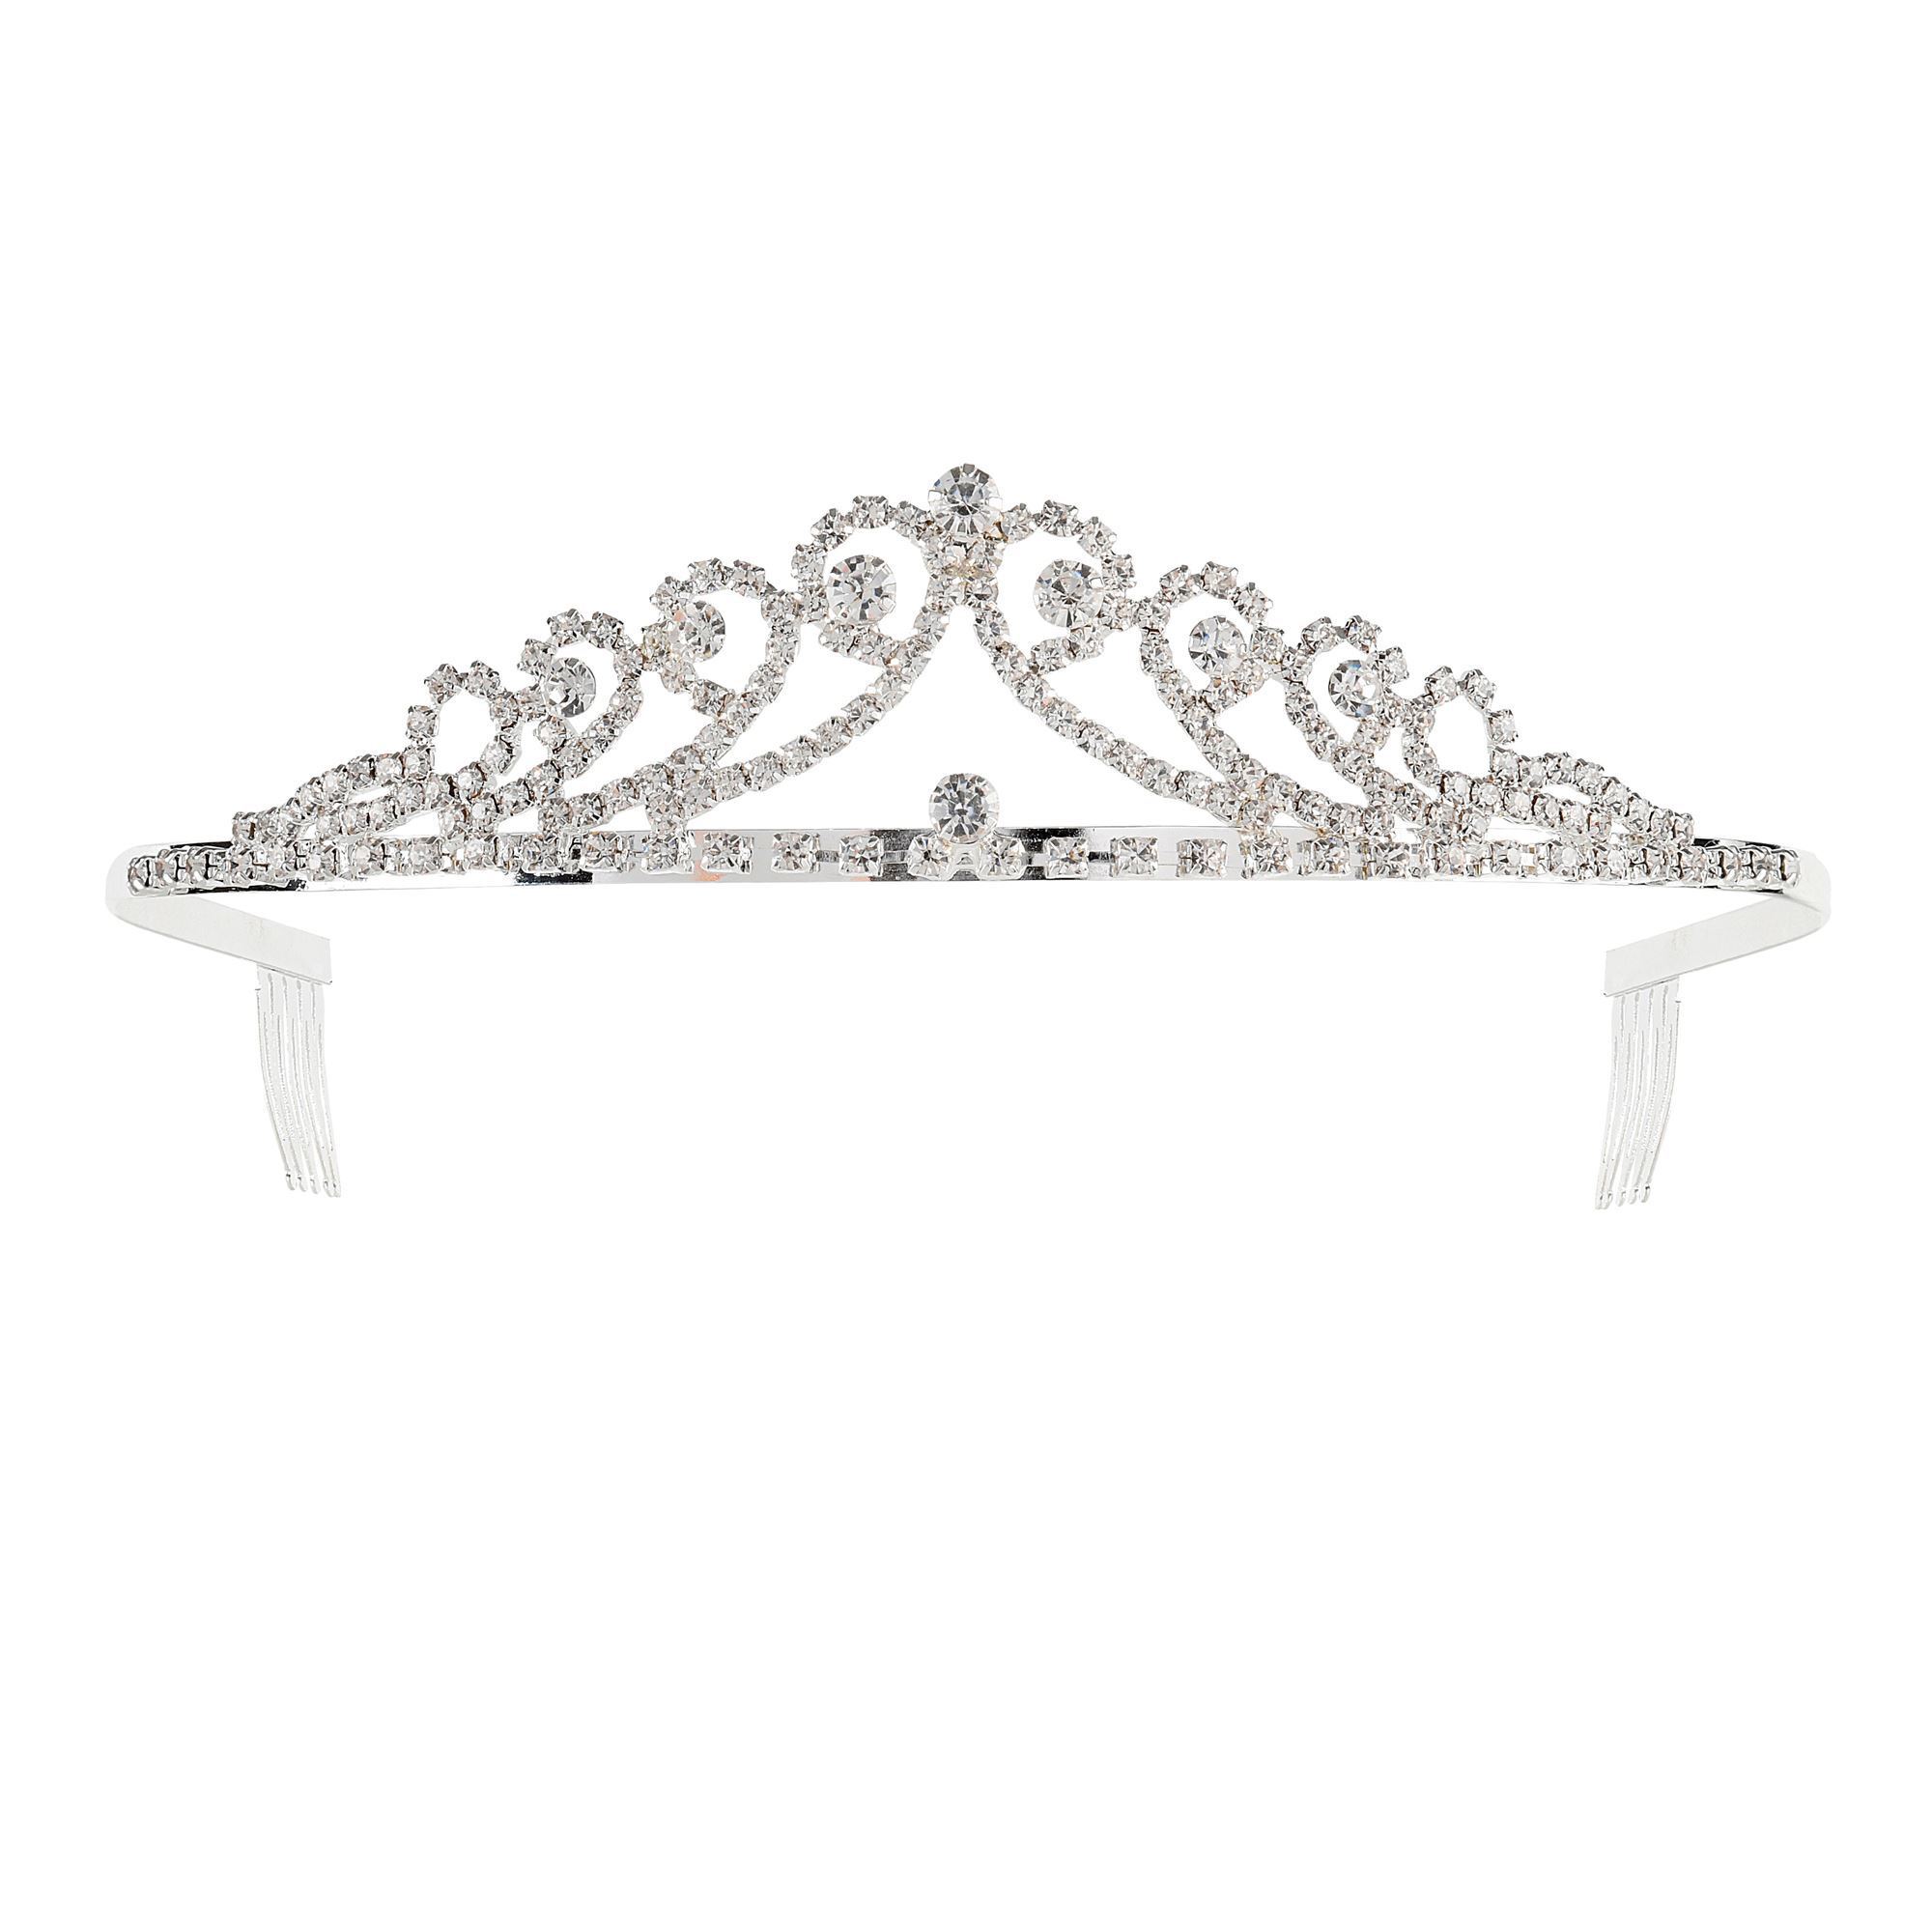 Strass tiara zilver prinsessen kroontje